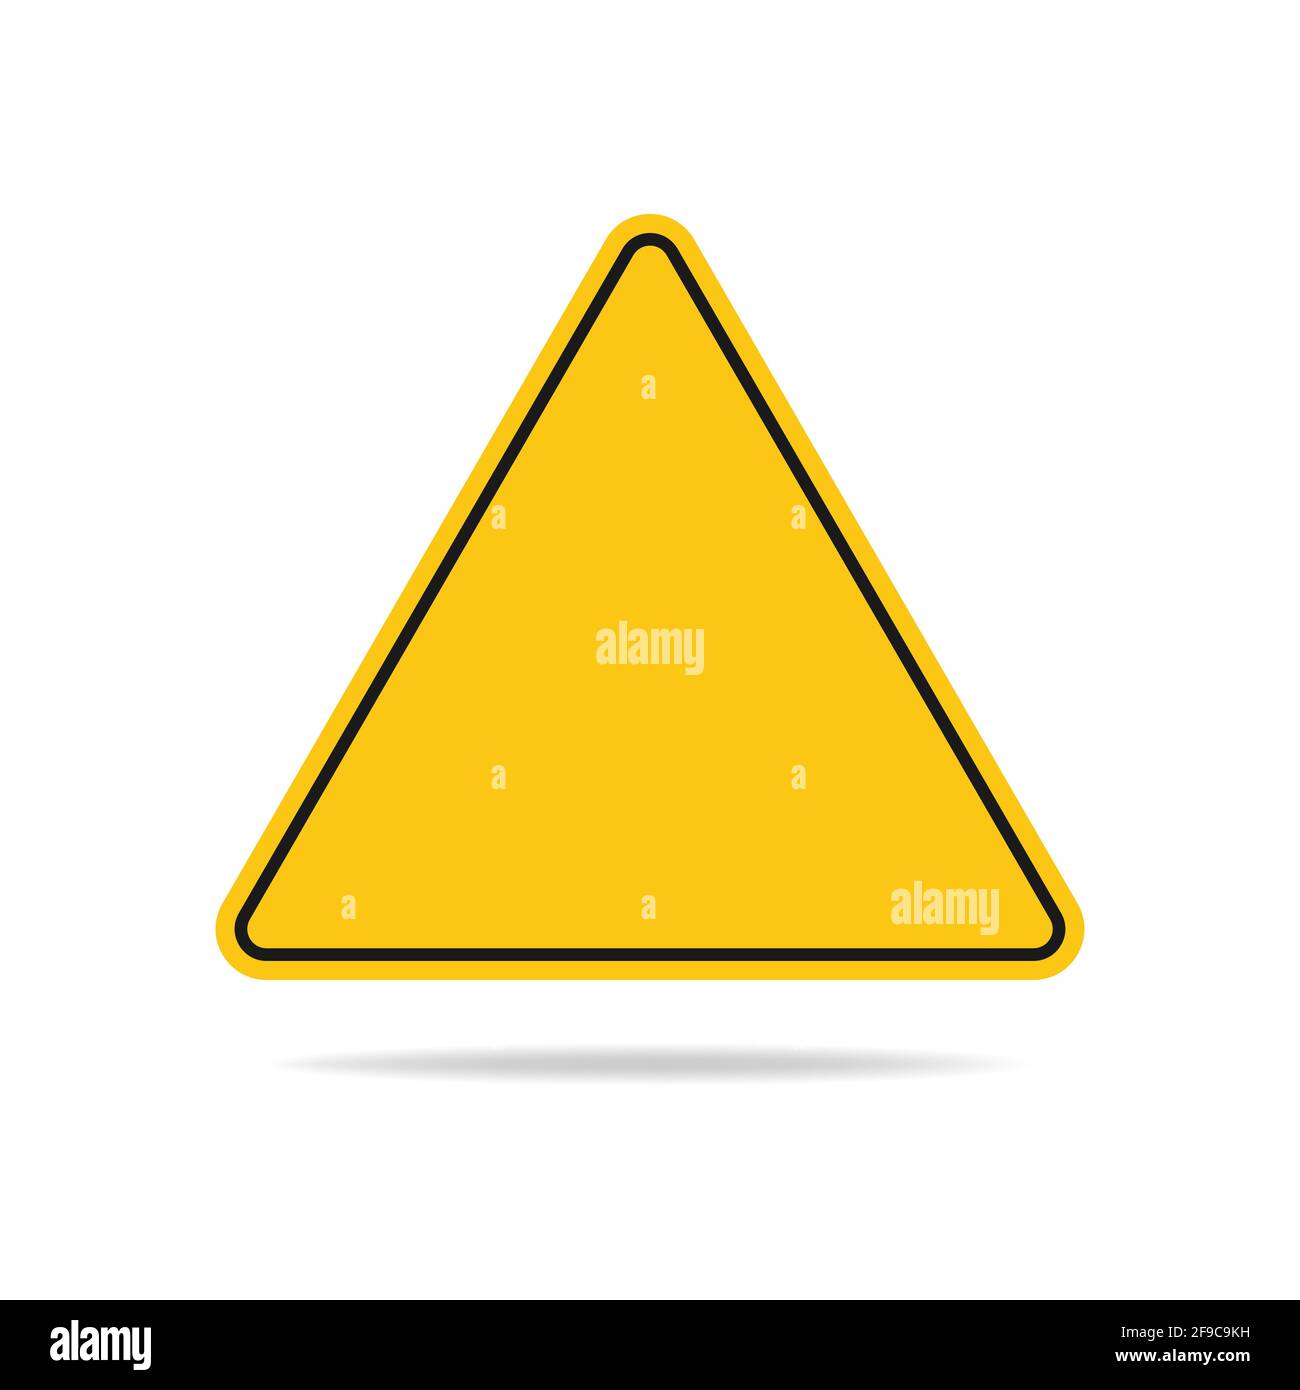 Das leere dreieckige Warnschild hat eine gelbe Farbe und ist auf einem weißen Hintergrund isoliert. Flache Vektorgrafik, Folge 10. Stock Vektor